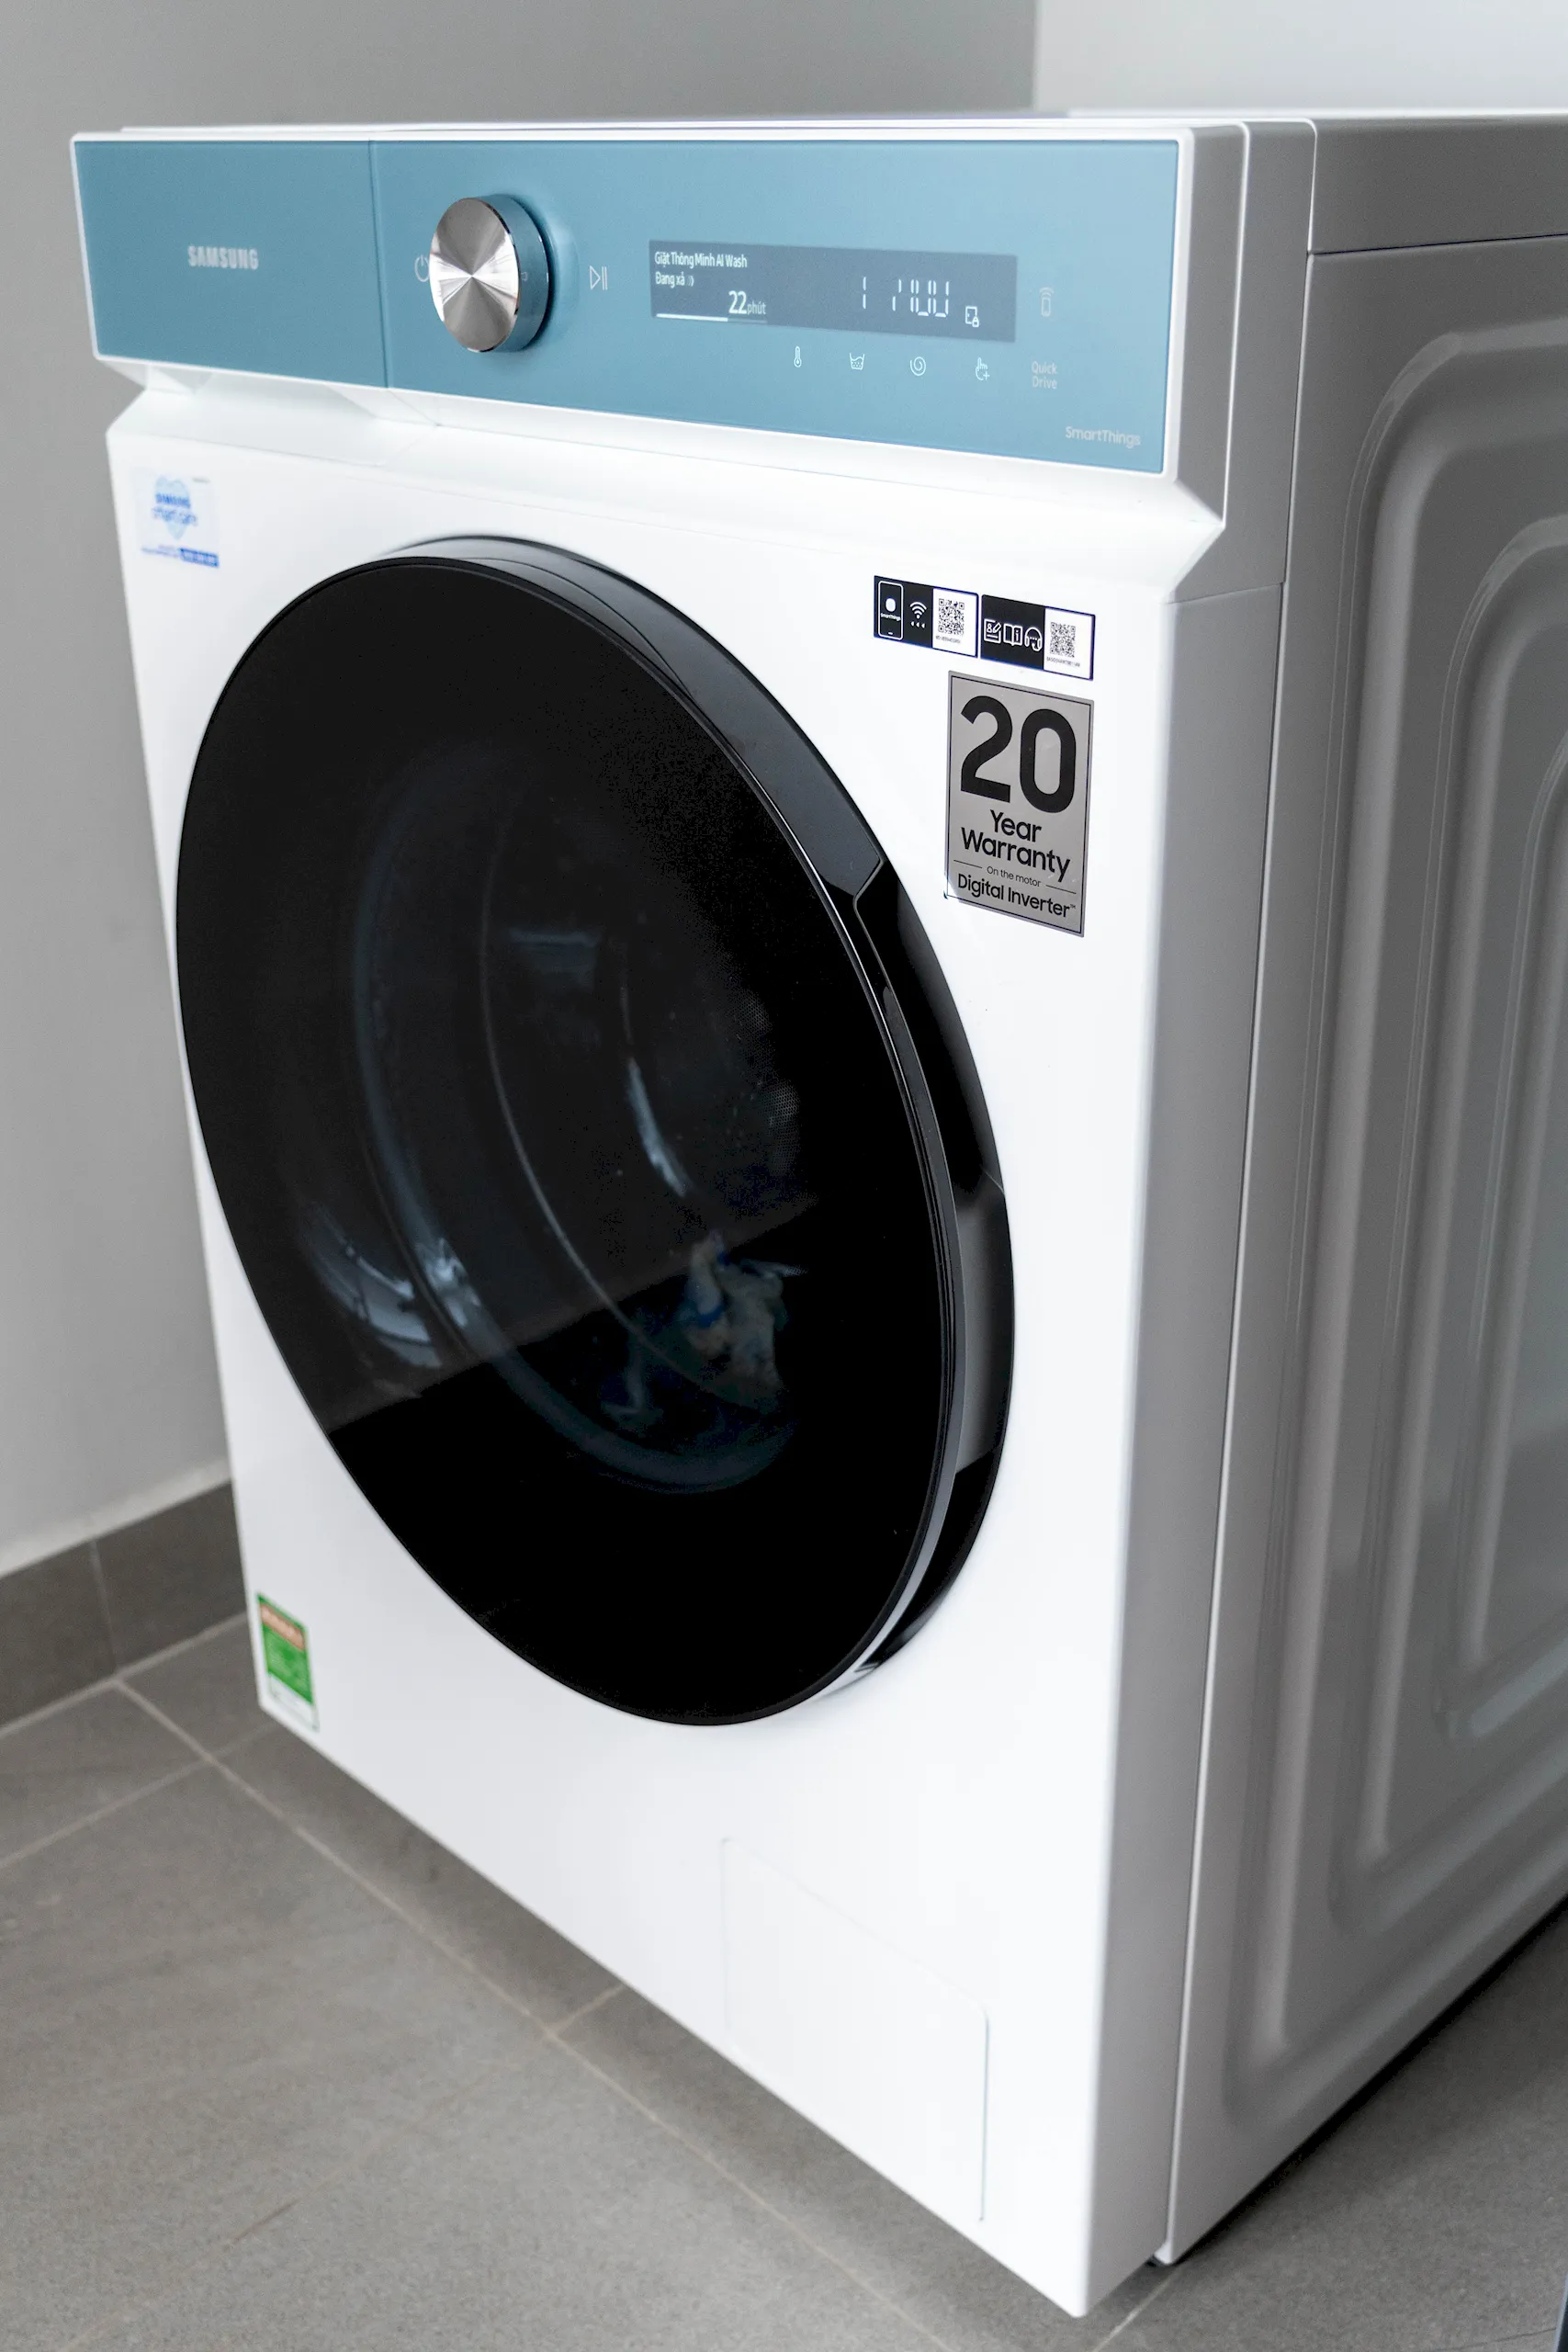 Đánh giá Máy giặt sấy thông minh Samsung Bespoke AI - Giặt sạch hoàn hảo, tính năng sấy tiện lợi